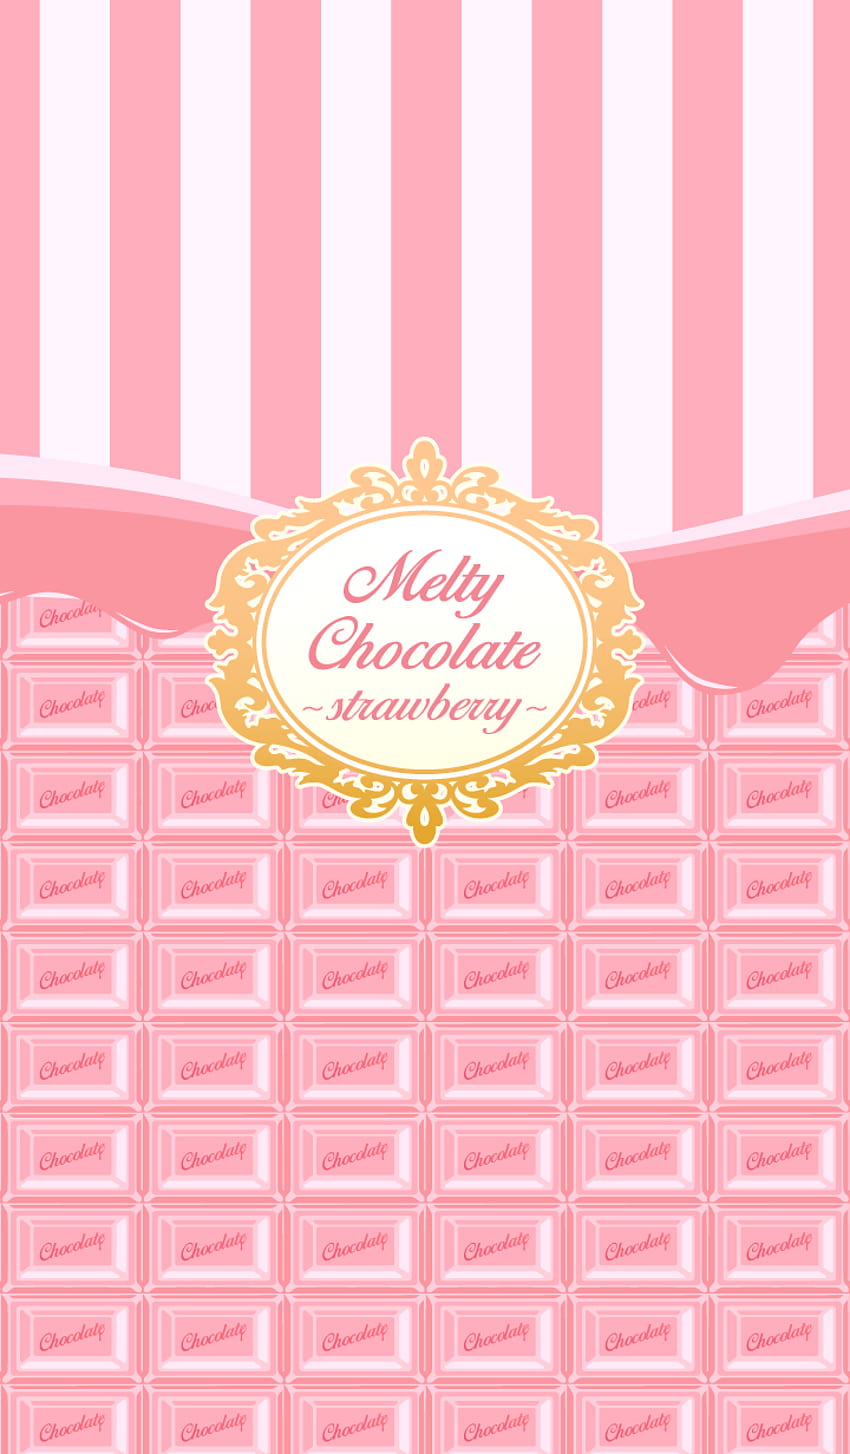 とろける板チョコがテーマです。 可愛らしいストロベリーチョコレート味バージョン。 ピンク色、キャンディーバー HD電話の壁紙